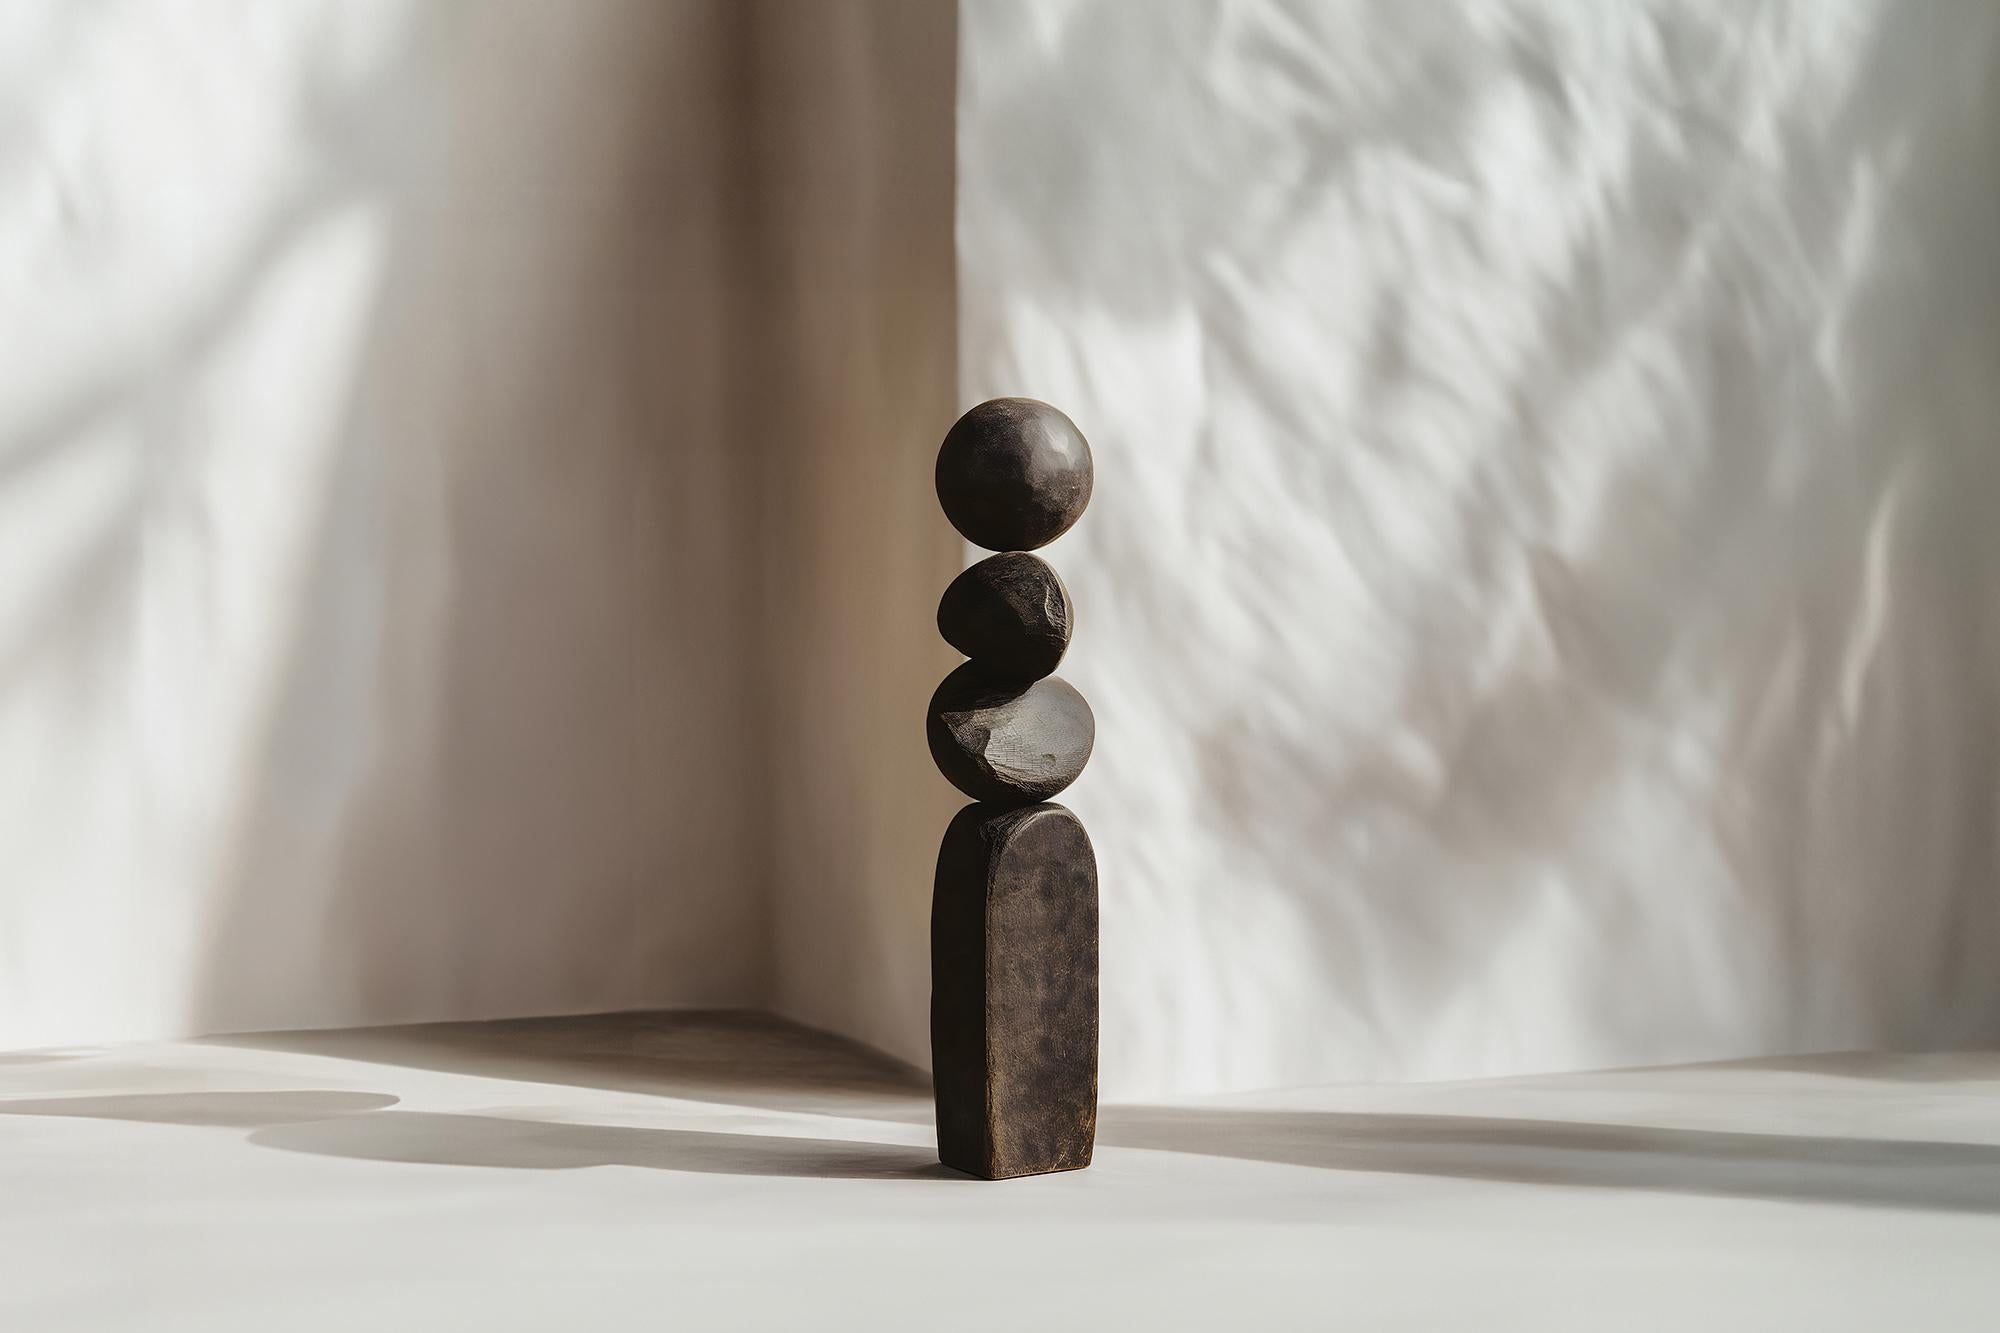 Par Joel Escalona, beauté abstraite en chêne brûlé, Still Stand No79
--


Les sculptures sur pied en bois de Joel Escalona sont des objets d'une beauté brute et d'une grâce sereine. Chacune d'entre elles témoigne de la puissance du matériau, avec